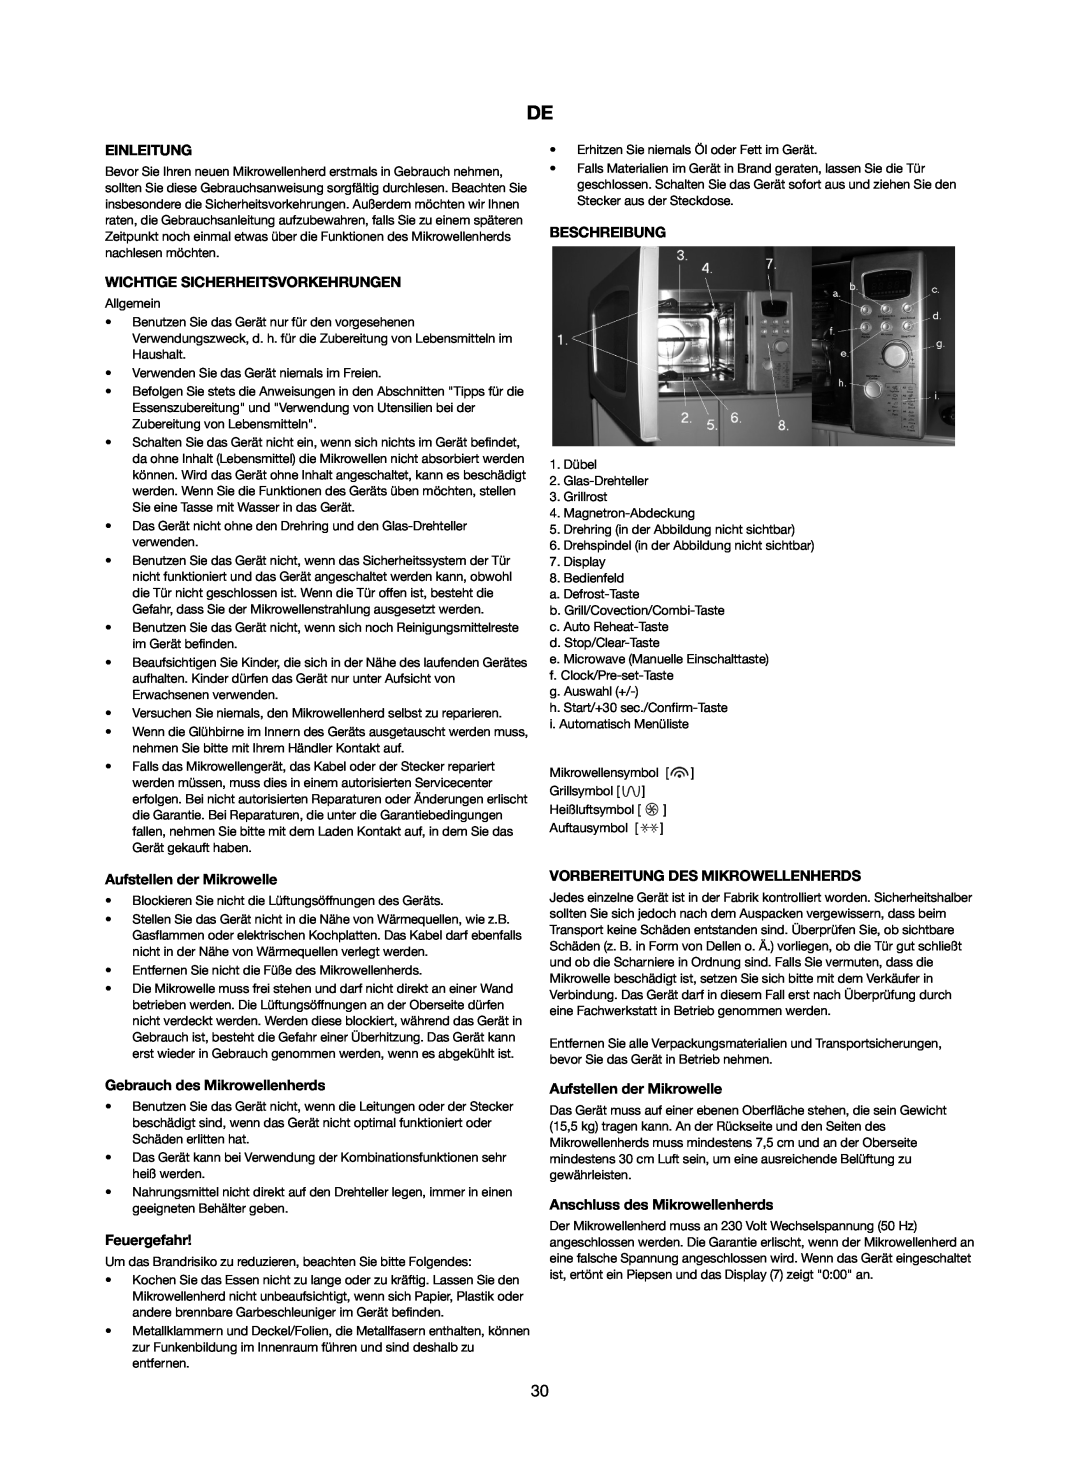 Melissa 753-123 manual Einleitung, Wichtige Sicherheitsvorkehrungen, Beschreibung, Aufstellen der Mikrowelle, Feuergefahr 